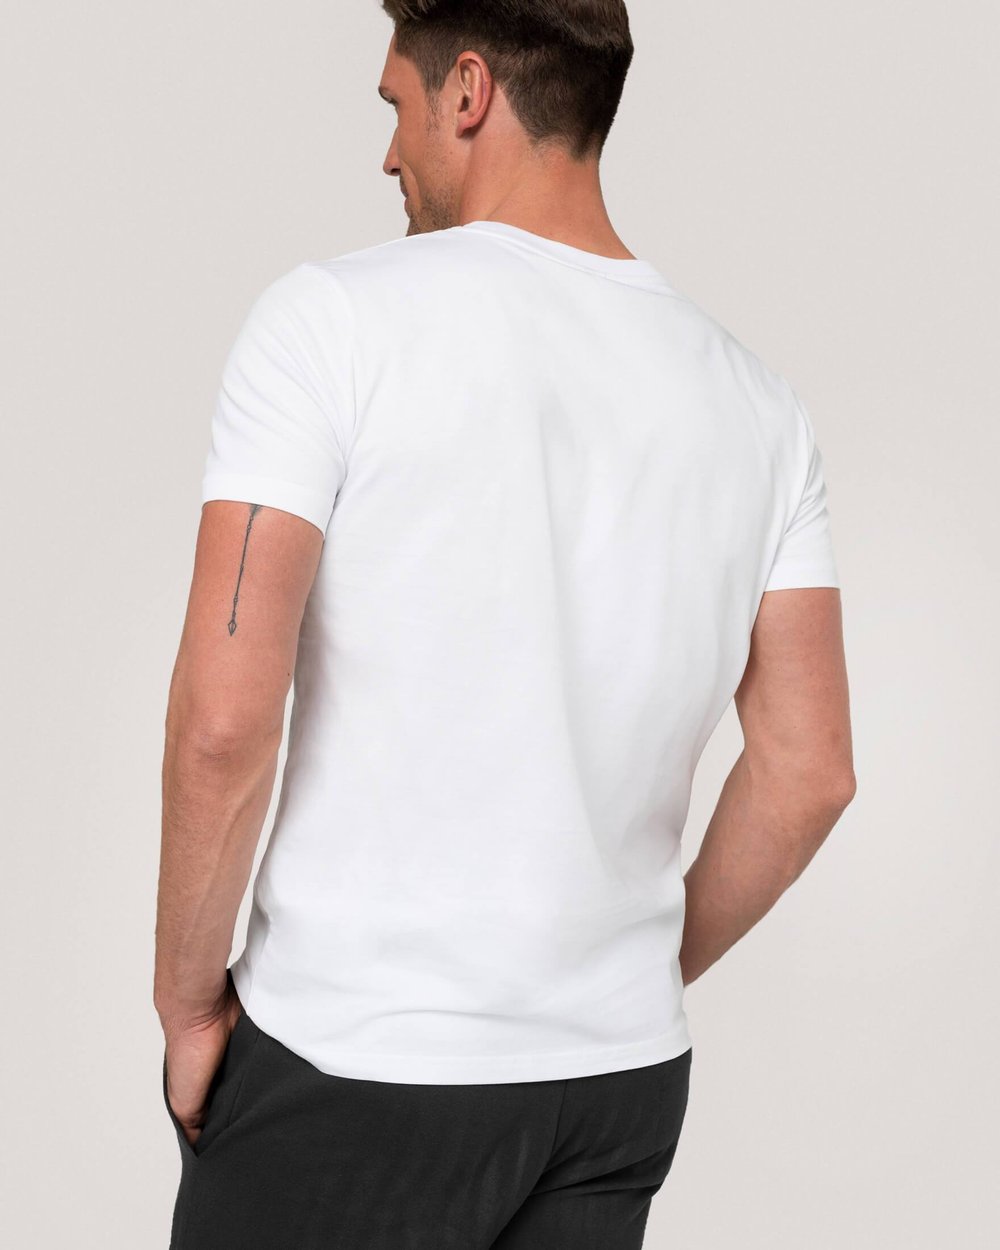 T-Shirt Herren Weiss Jefferson Won Hundred 100% Bio-Baumwolle Brusttasche  Größe M-XL — ECIZO - Nachhaltige Mode für Damen, Herren und Kinder